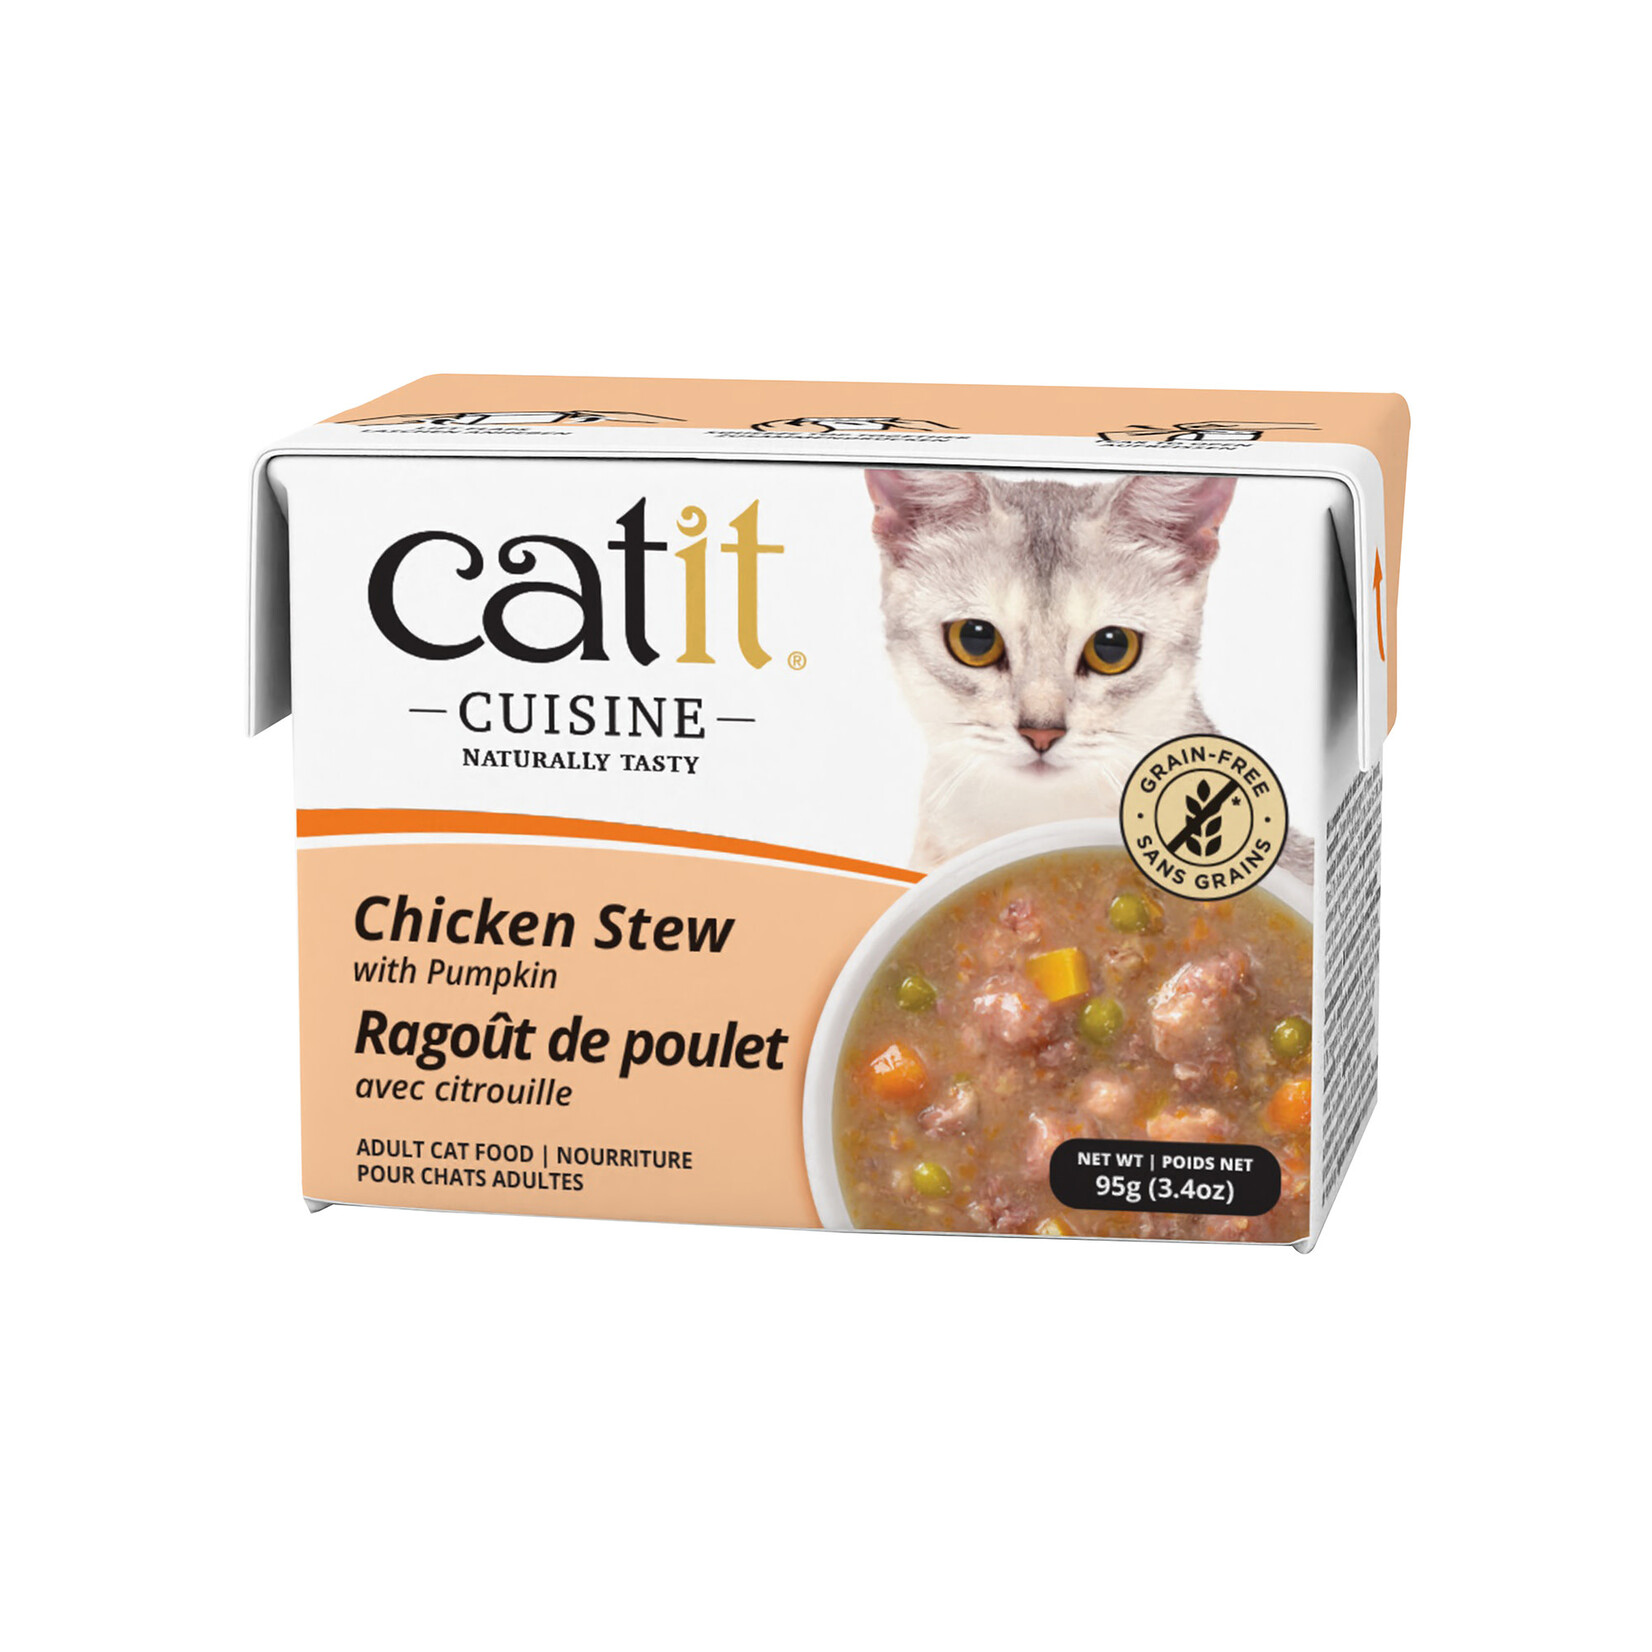 CAT IT Catit Cuisine Chicken Stew with Pumpkin - 95 g